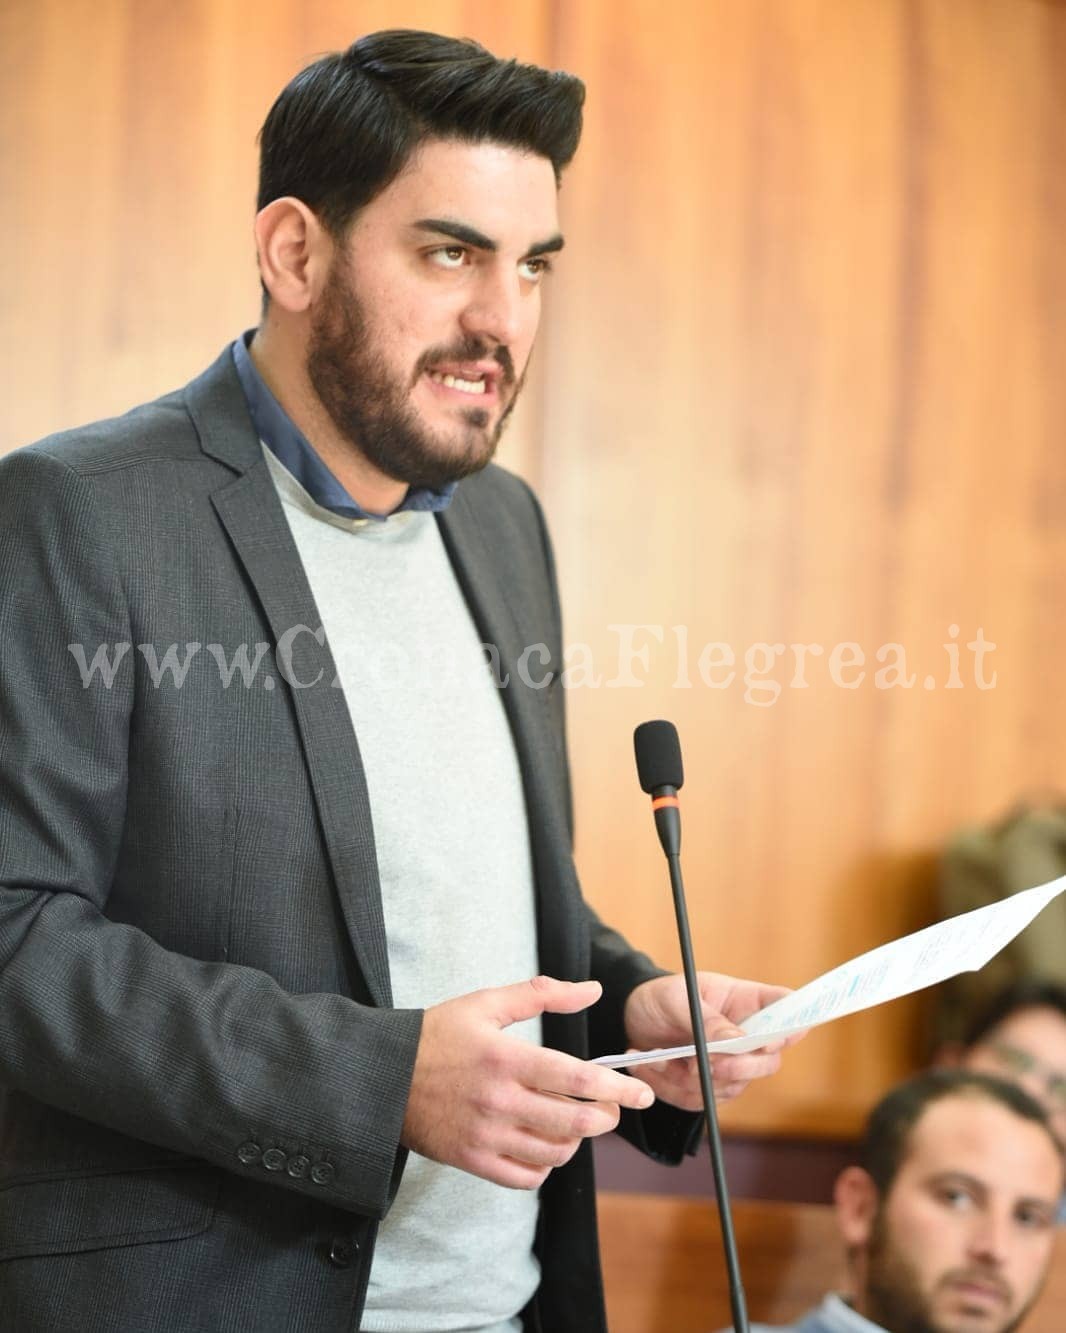 POZZUOLI/ Verso le elezioni, nasce la coalizione “Possiamo!” a sostegno del candidato sindaco Postiglione